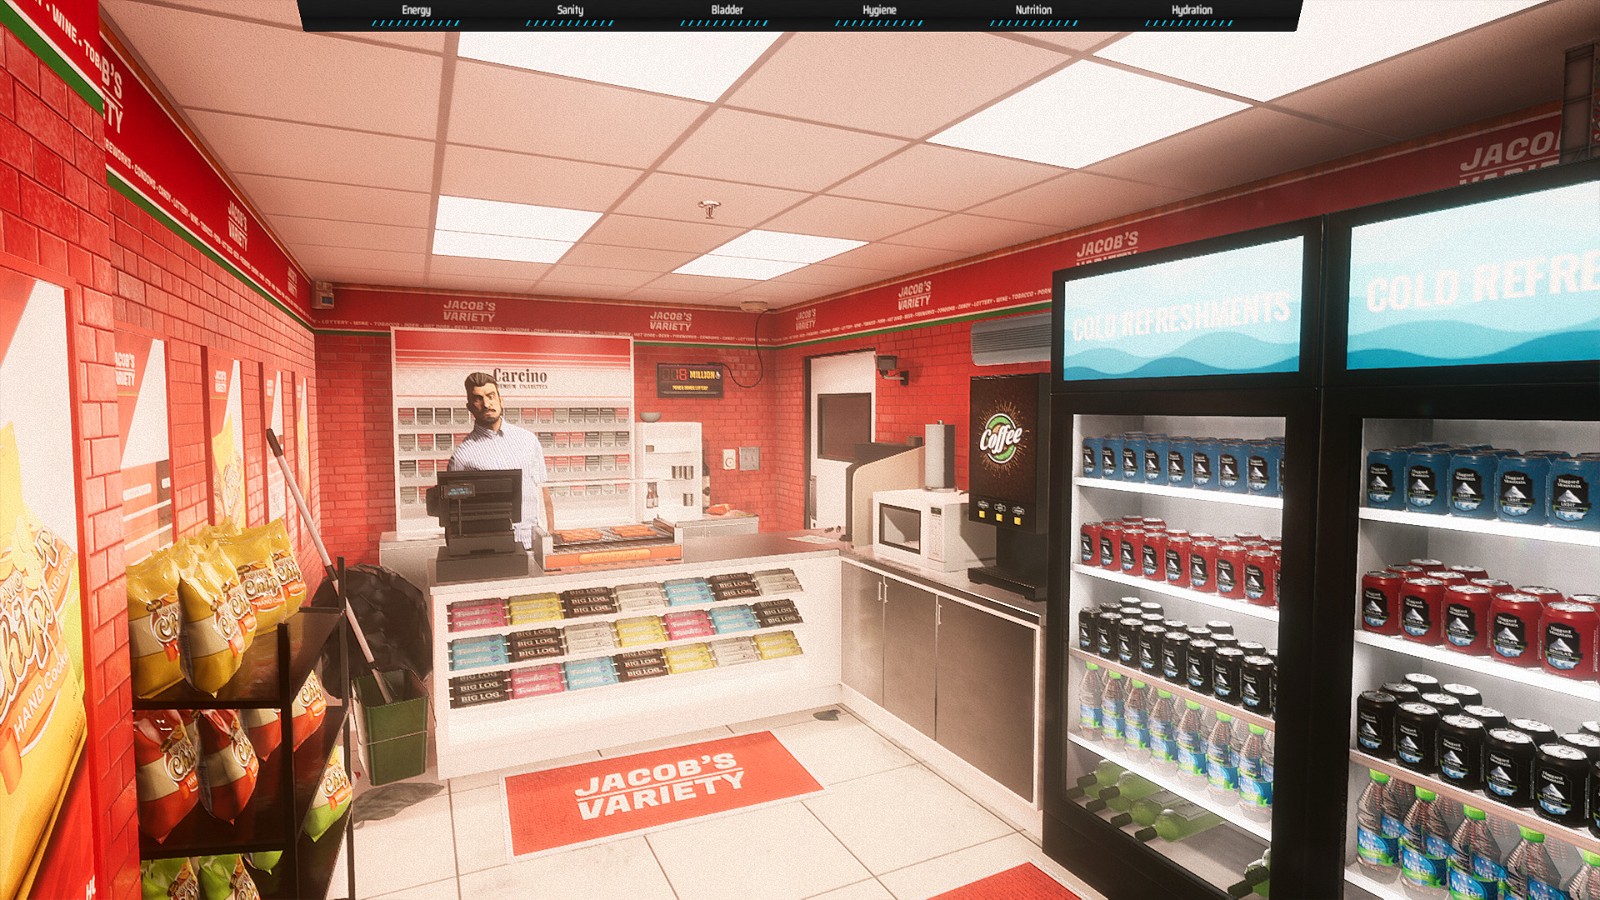 地铁司机生活模拟游戏《Metro Sim Hustle》正式发售 Steam国区70元